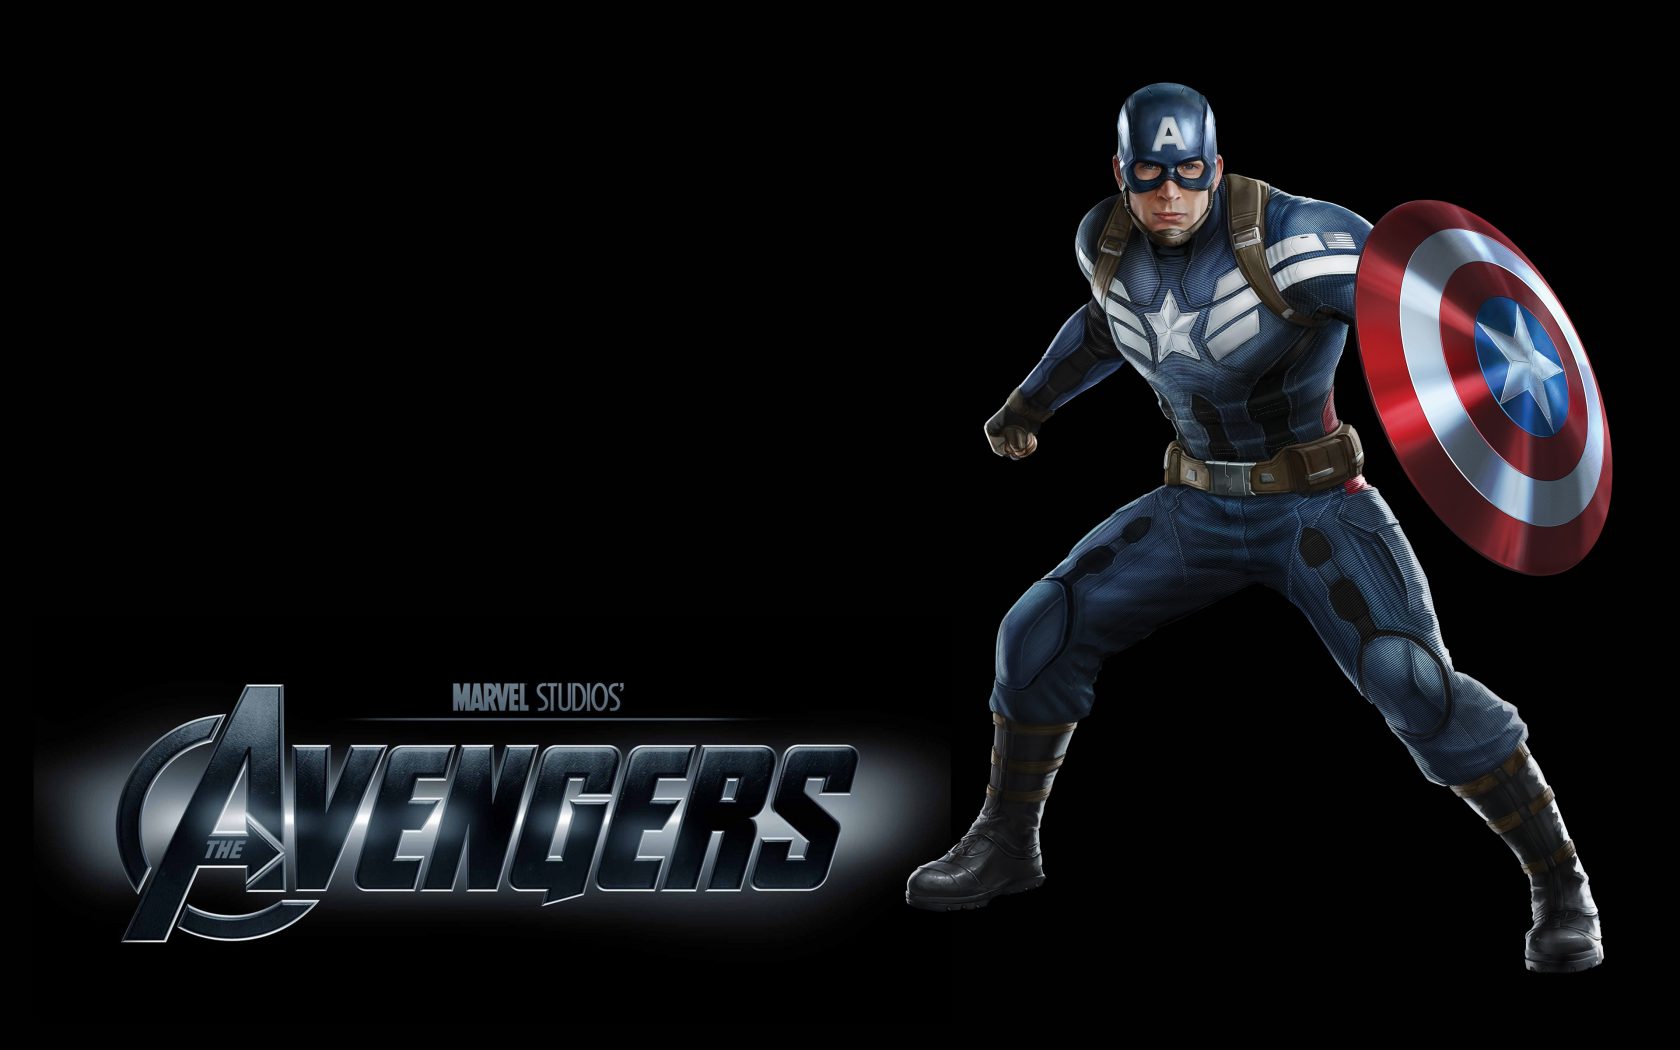 캡틴 아메리카 벽지 for mobile,캡틴 아메리카,액션 어드벤처 게임,슈퍼 히어로,소설 속의 인물,영웅